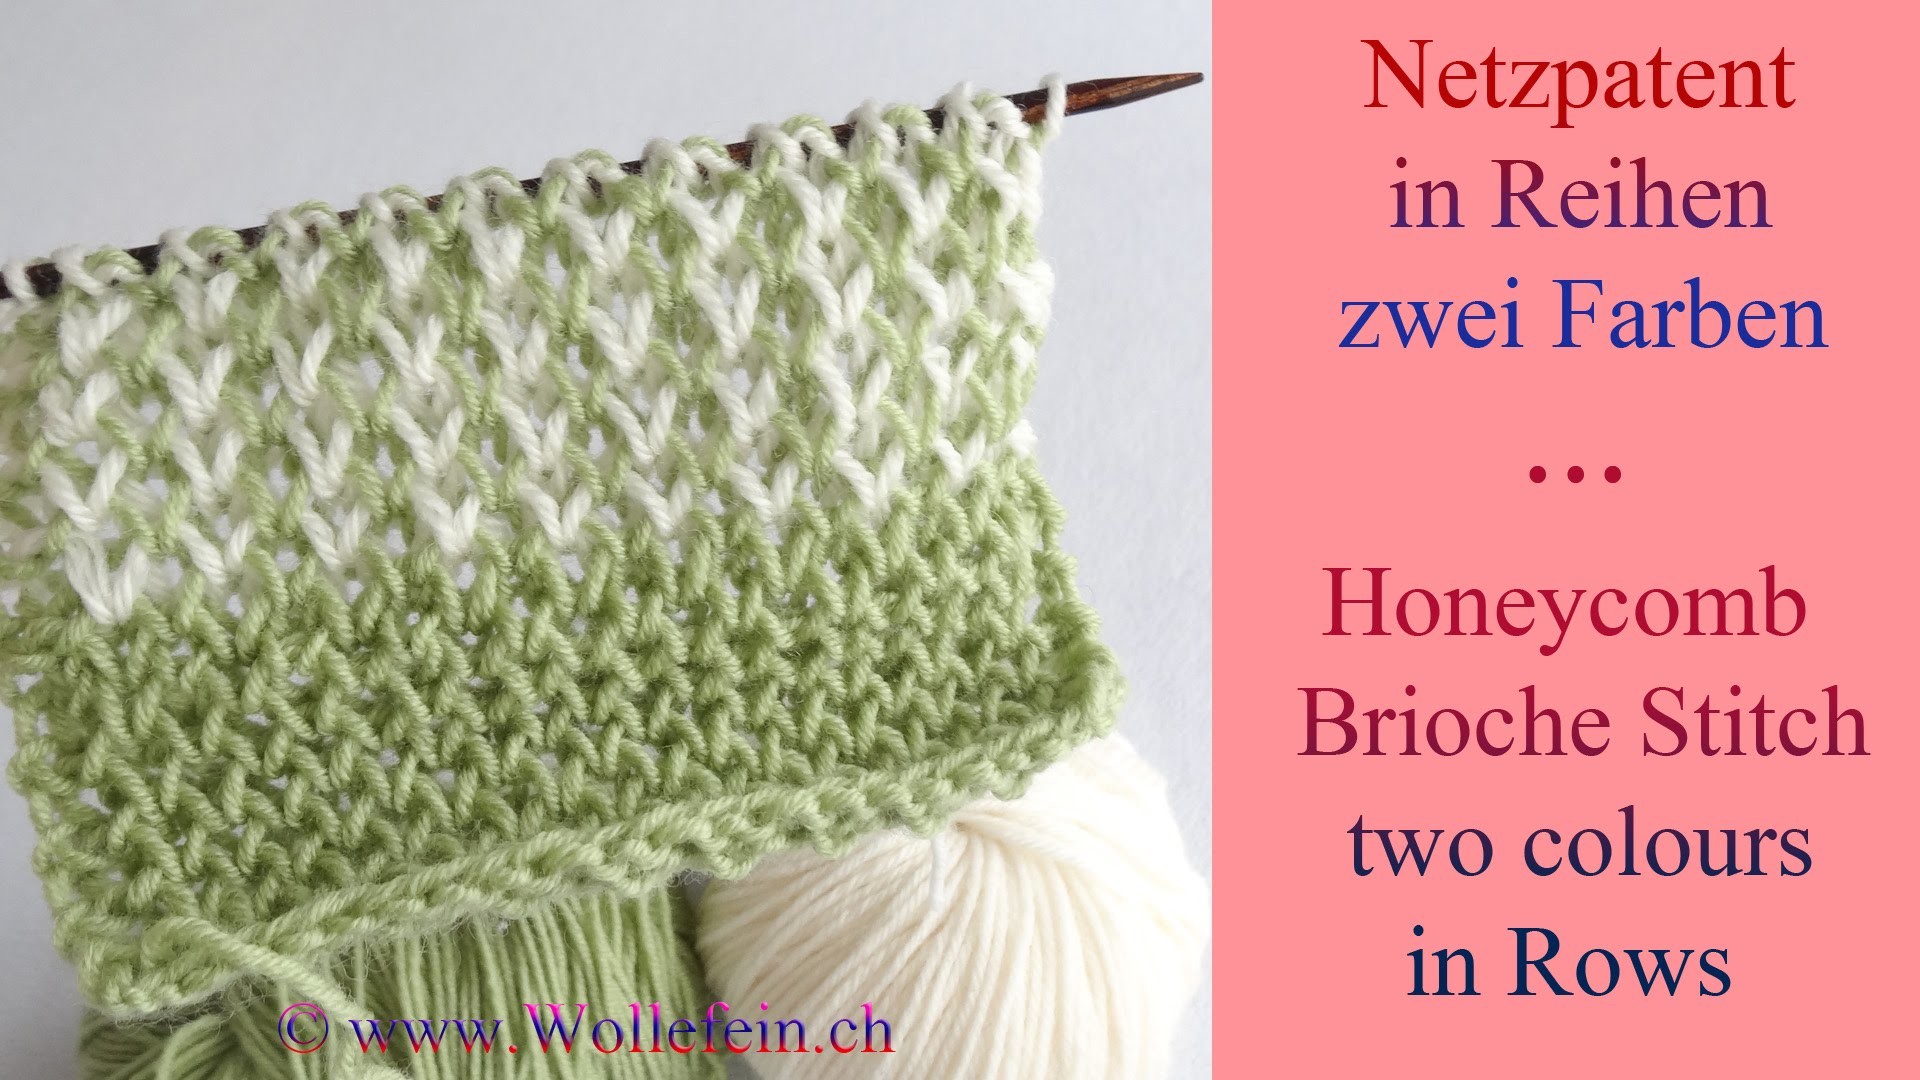 Netzpatent in Reihen zwei Farben - Honeycomb Brioche Stitch in Rows two colours